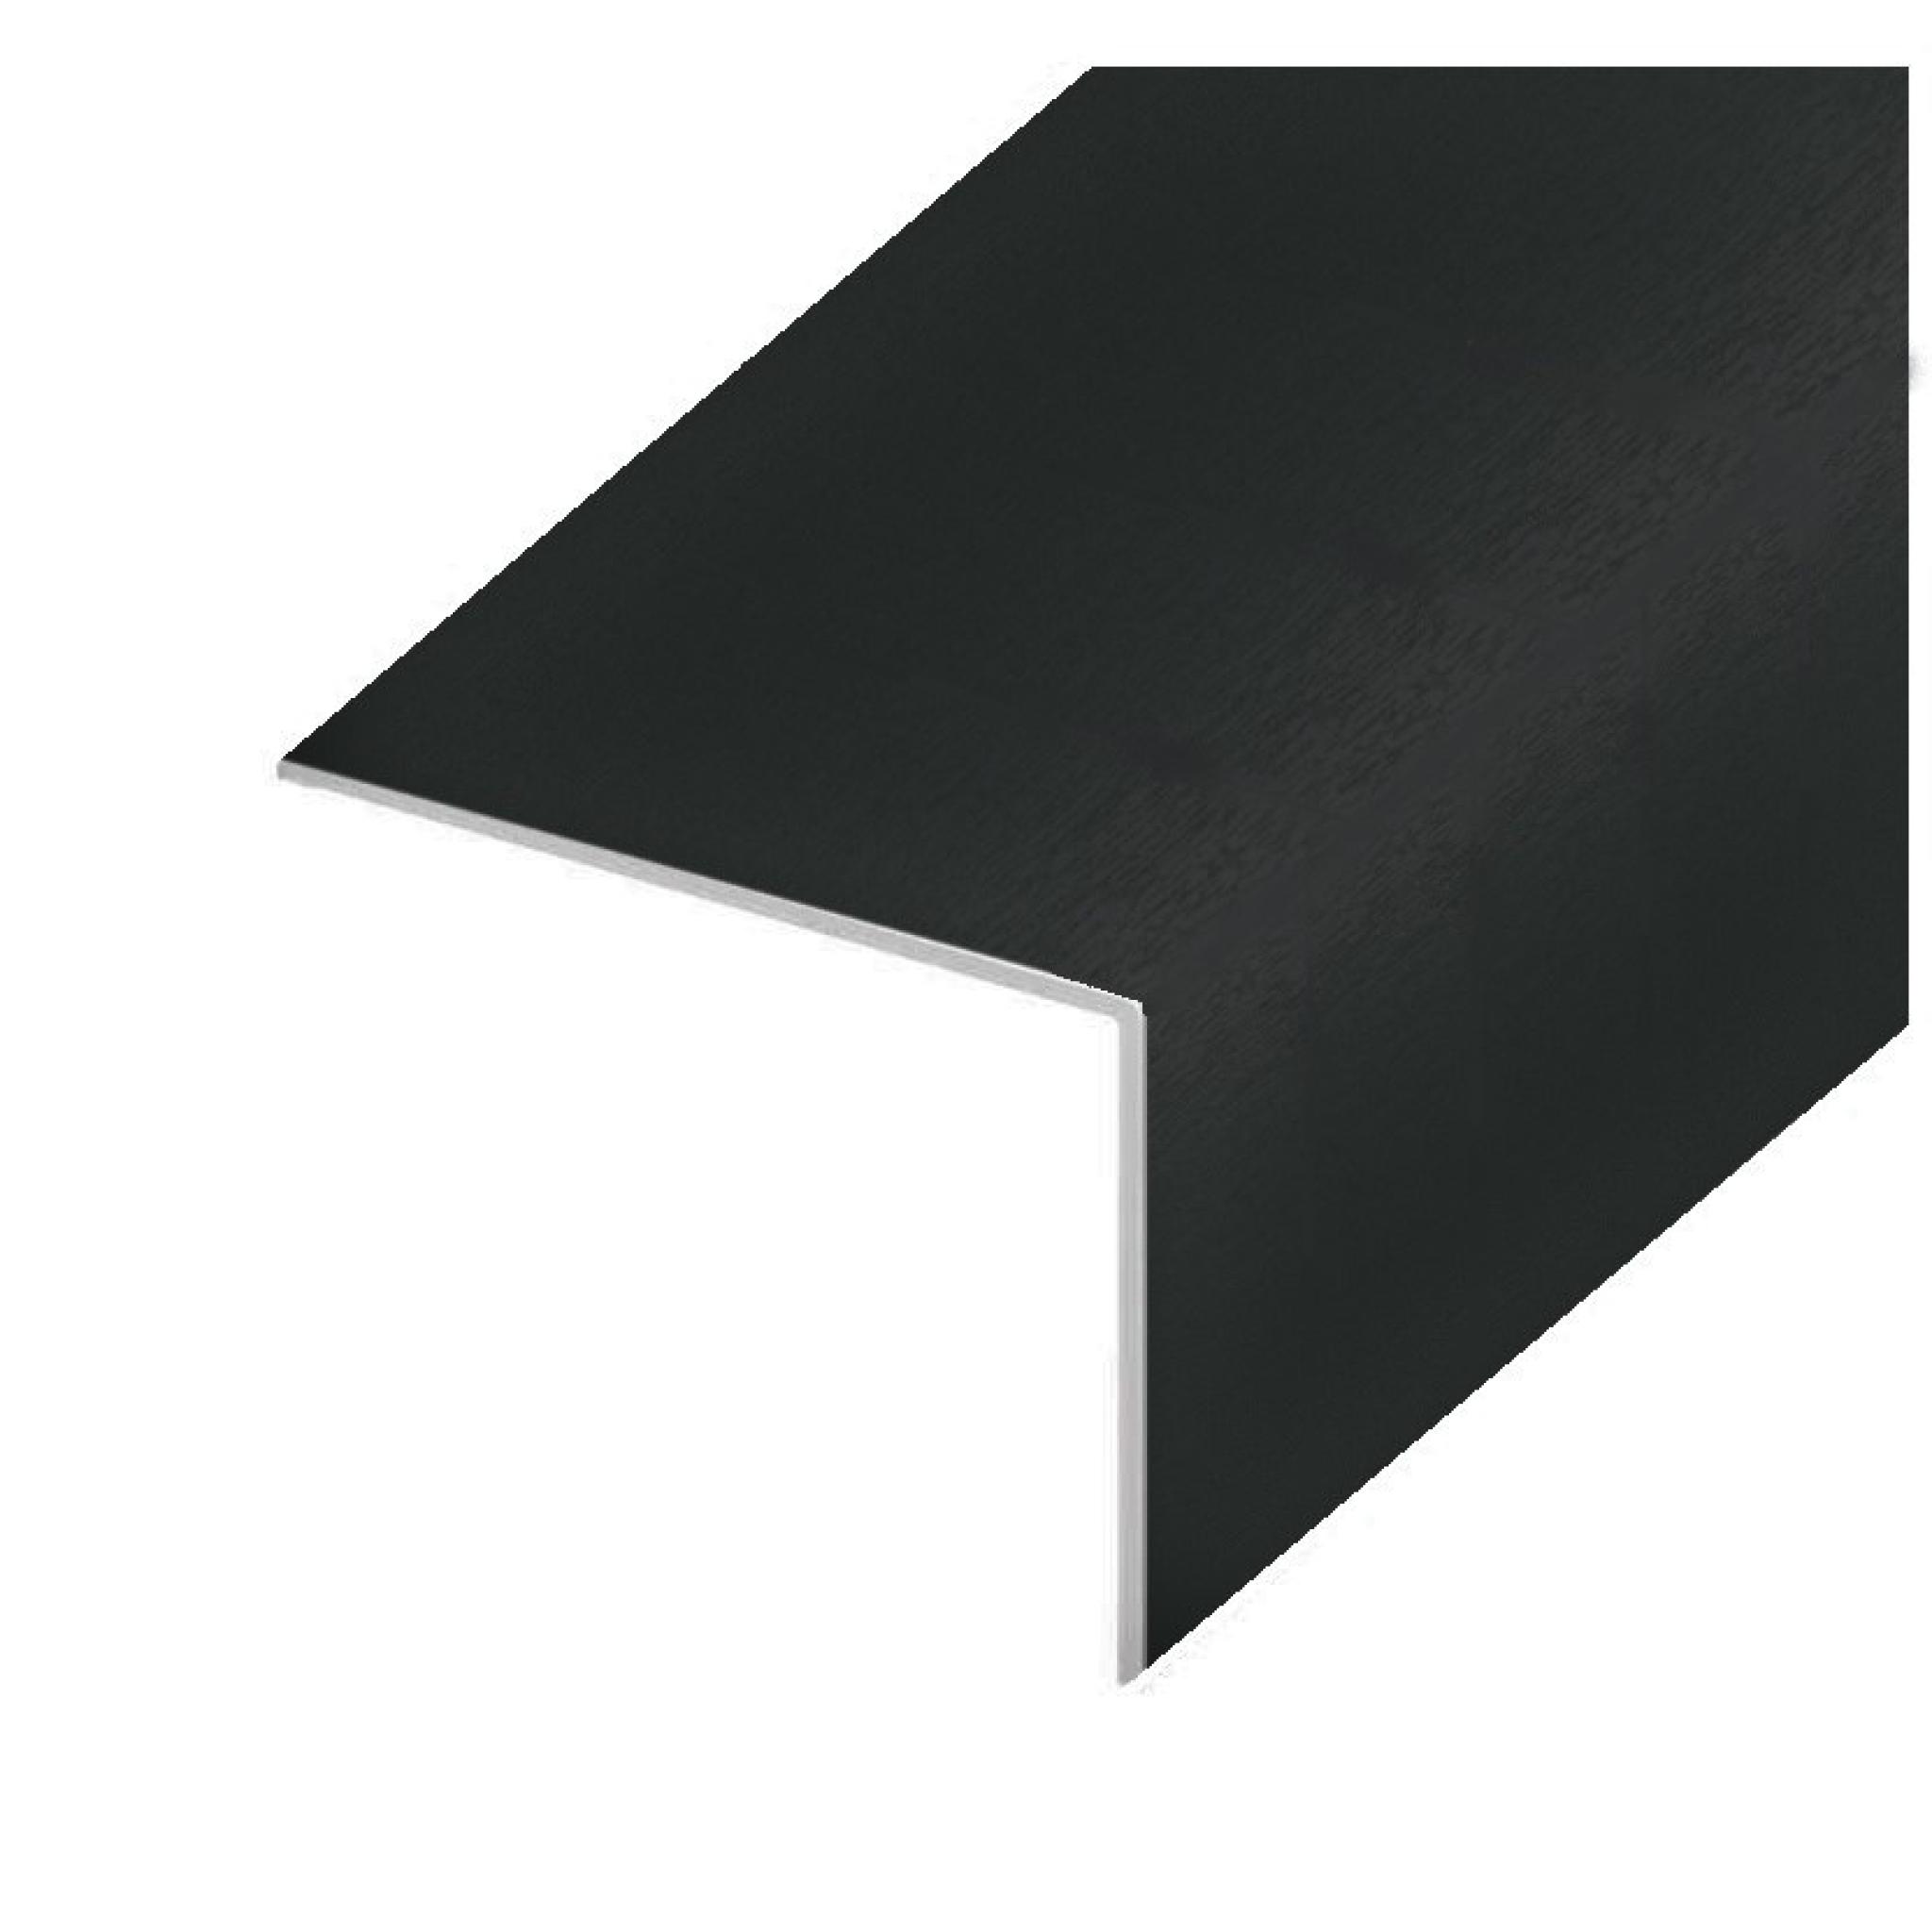 Black Ash PVC 25mm x 25mm Rigid Angle